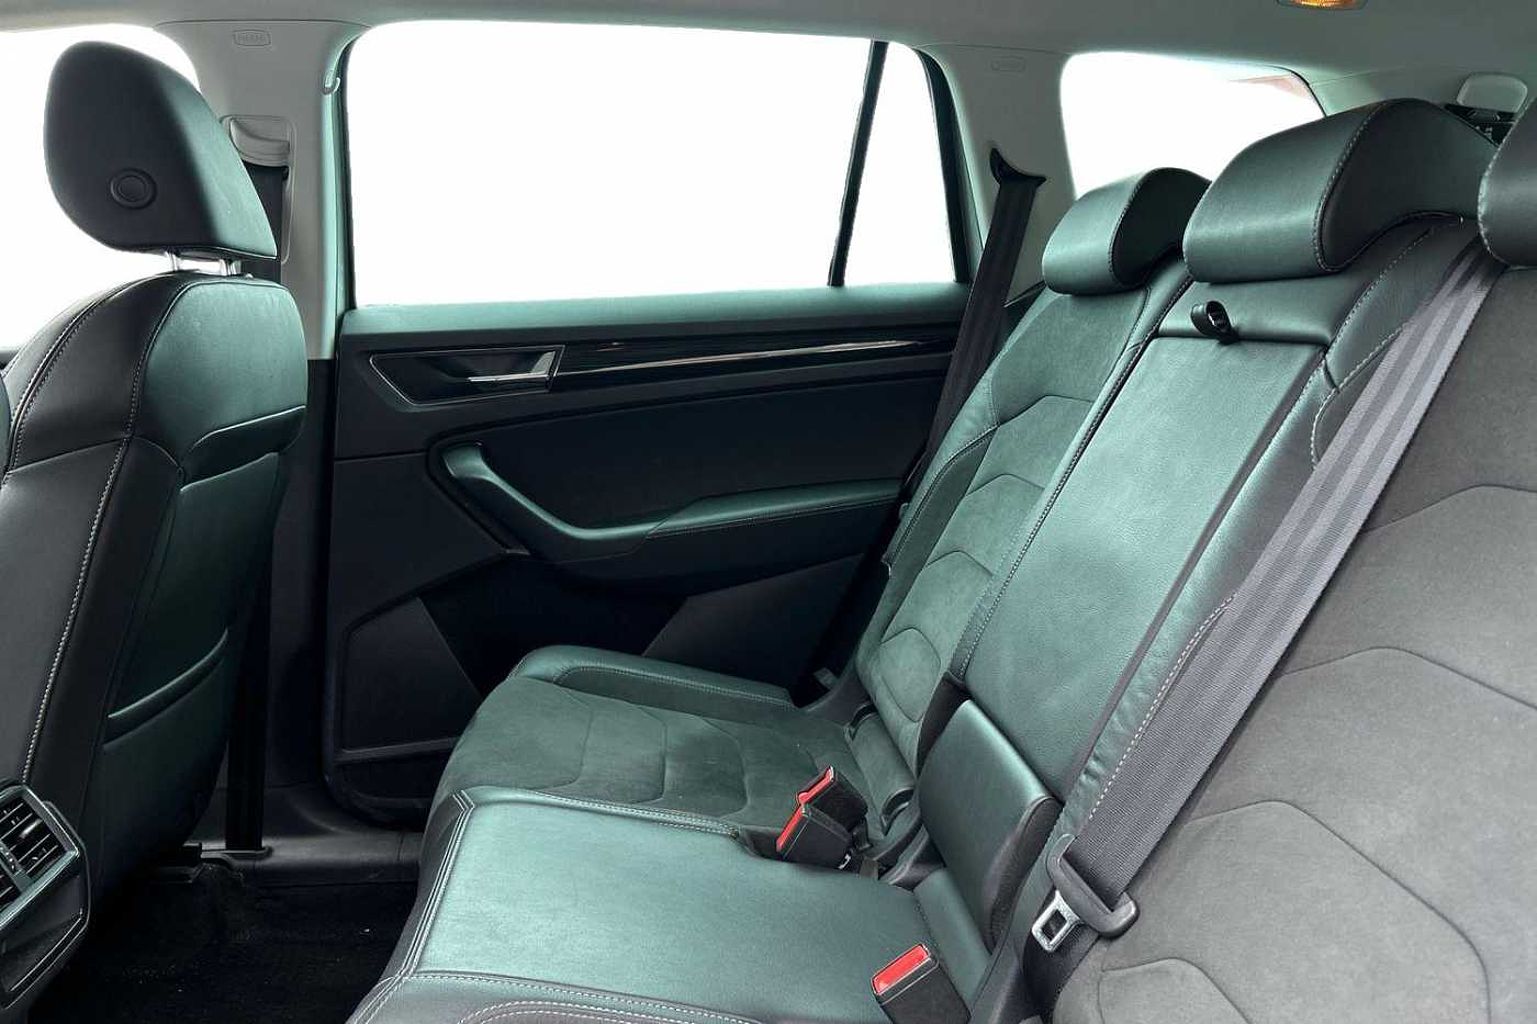 SKODA Kodiaq 2.0TDI (150ps) SE L (7 seats) SCR DSG SUV